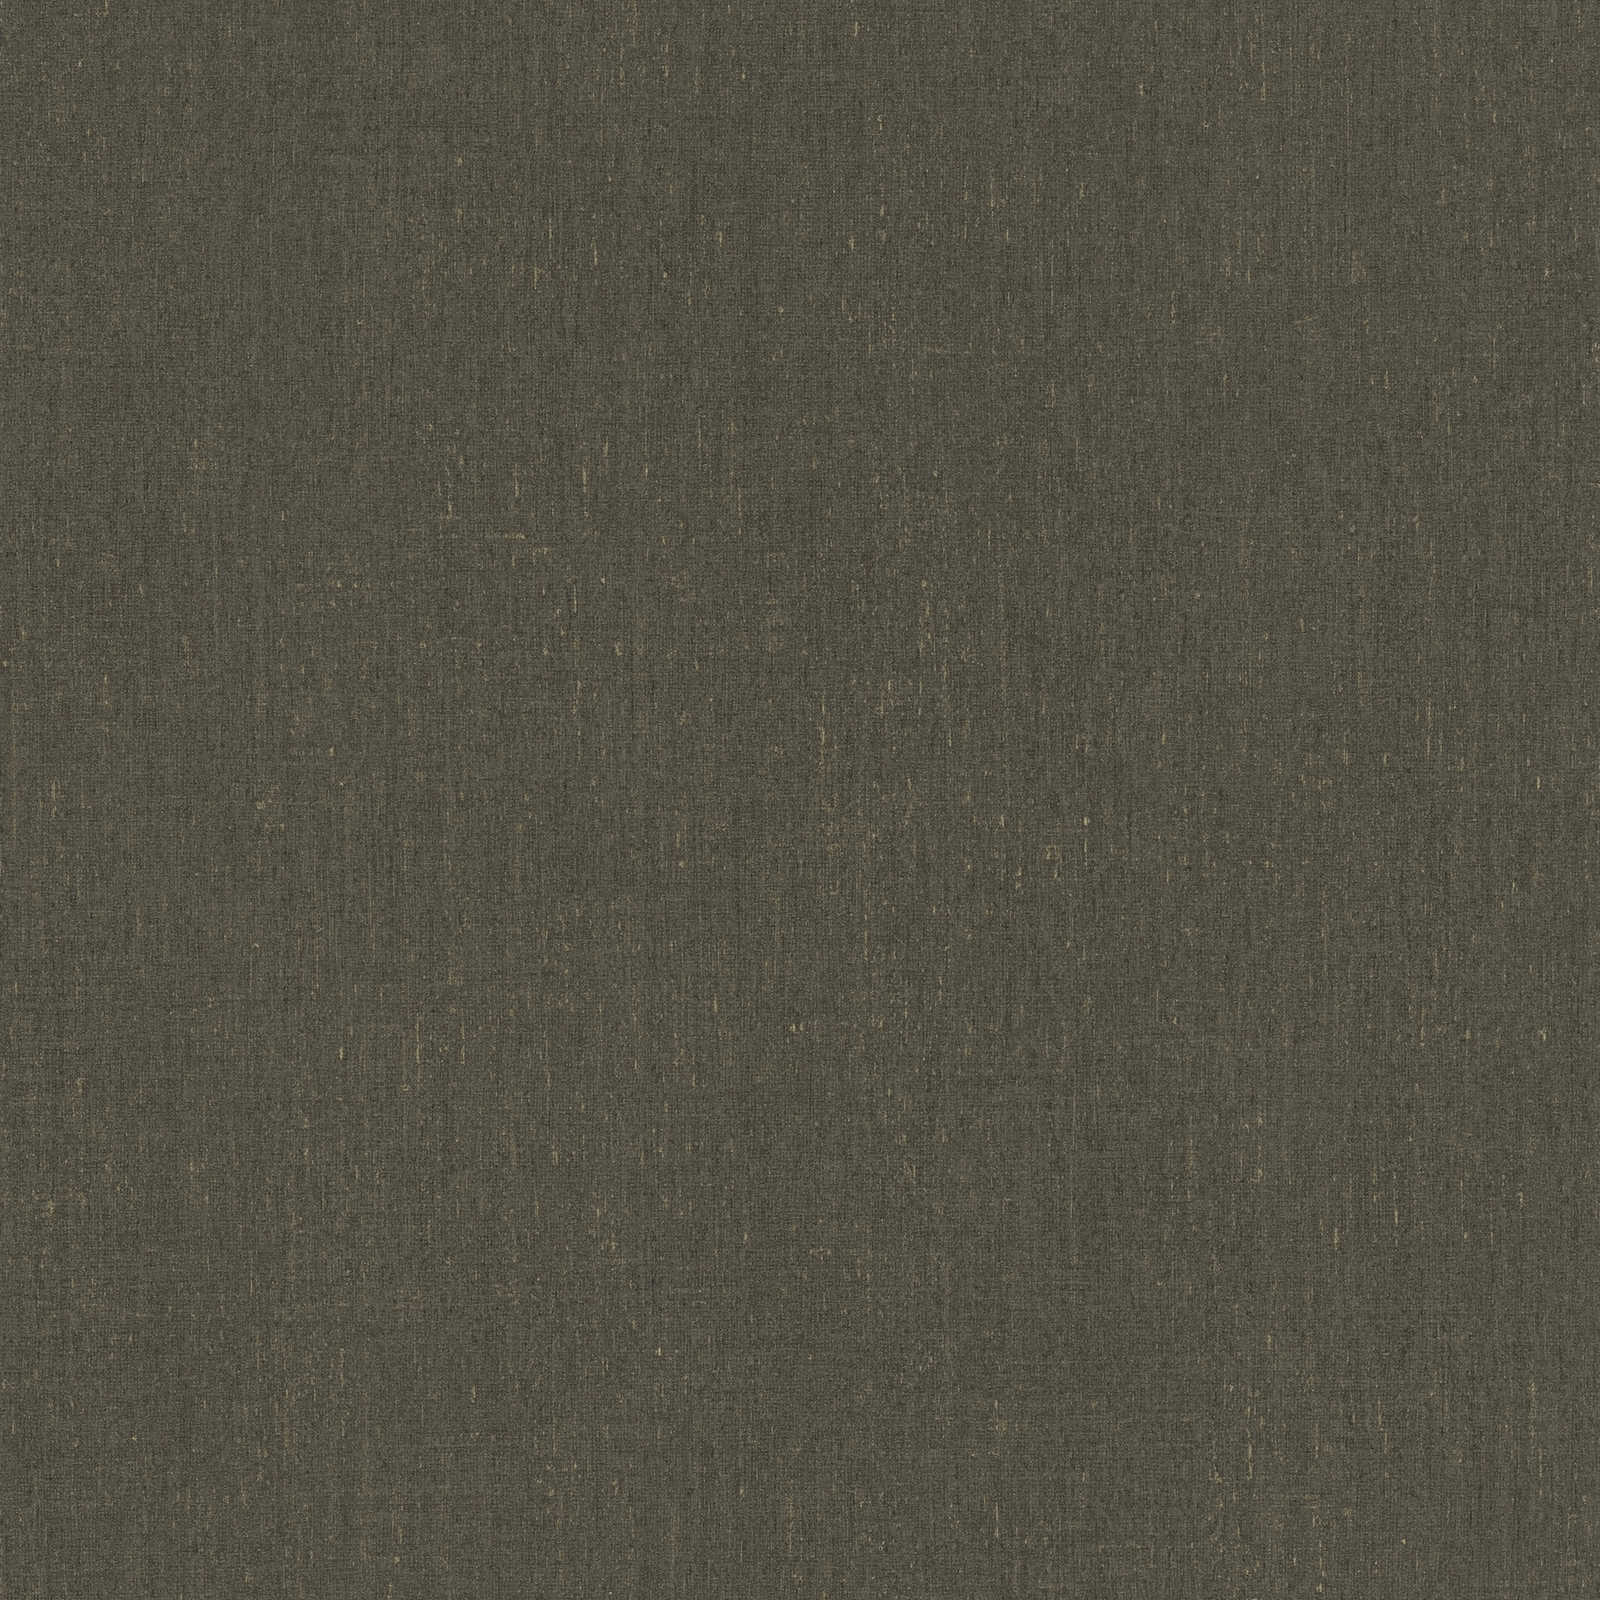 Papier peint marron foncé uni avec détails texturés - marron, gris
